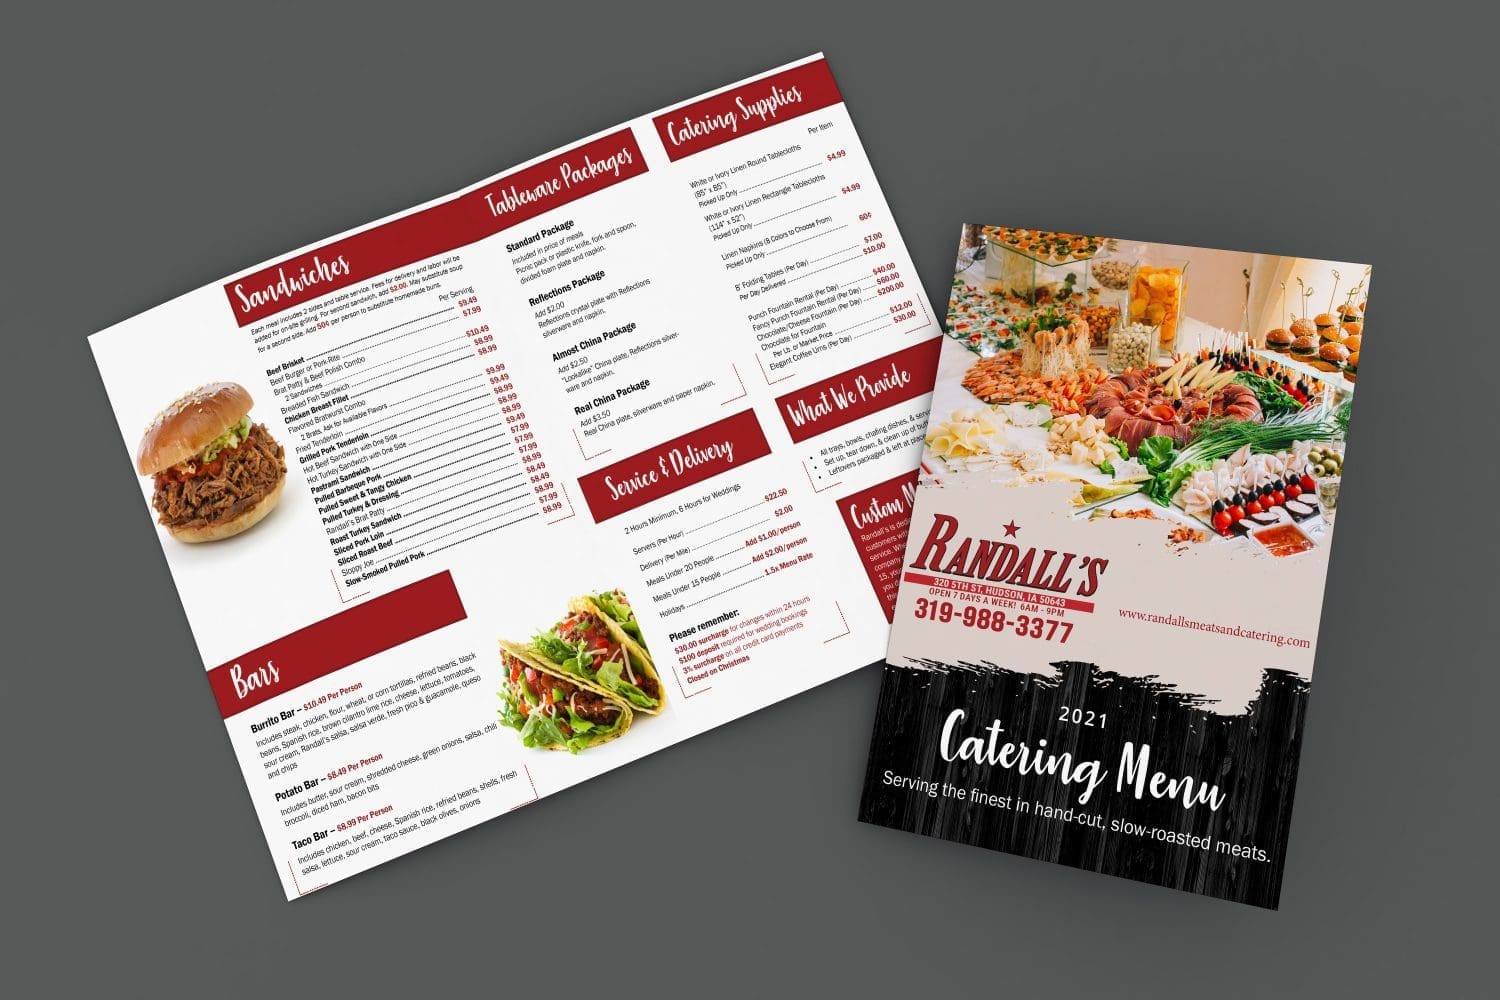 Randalls Stop N Shop catering menu booklet